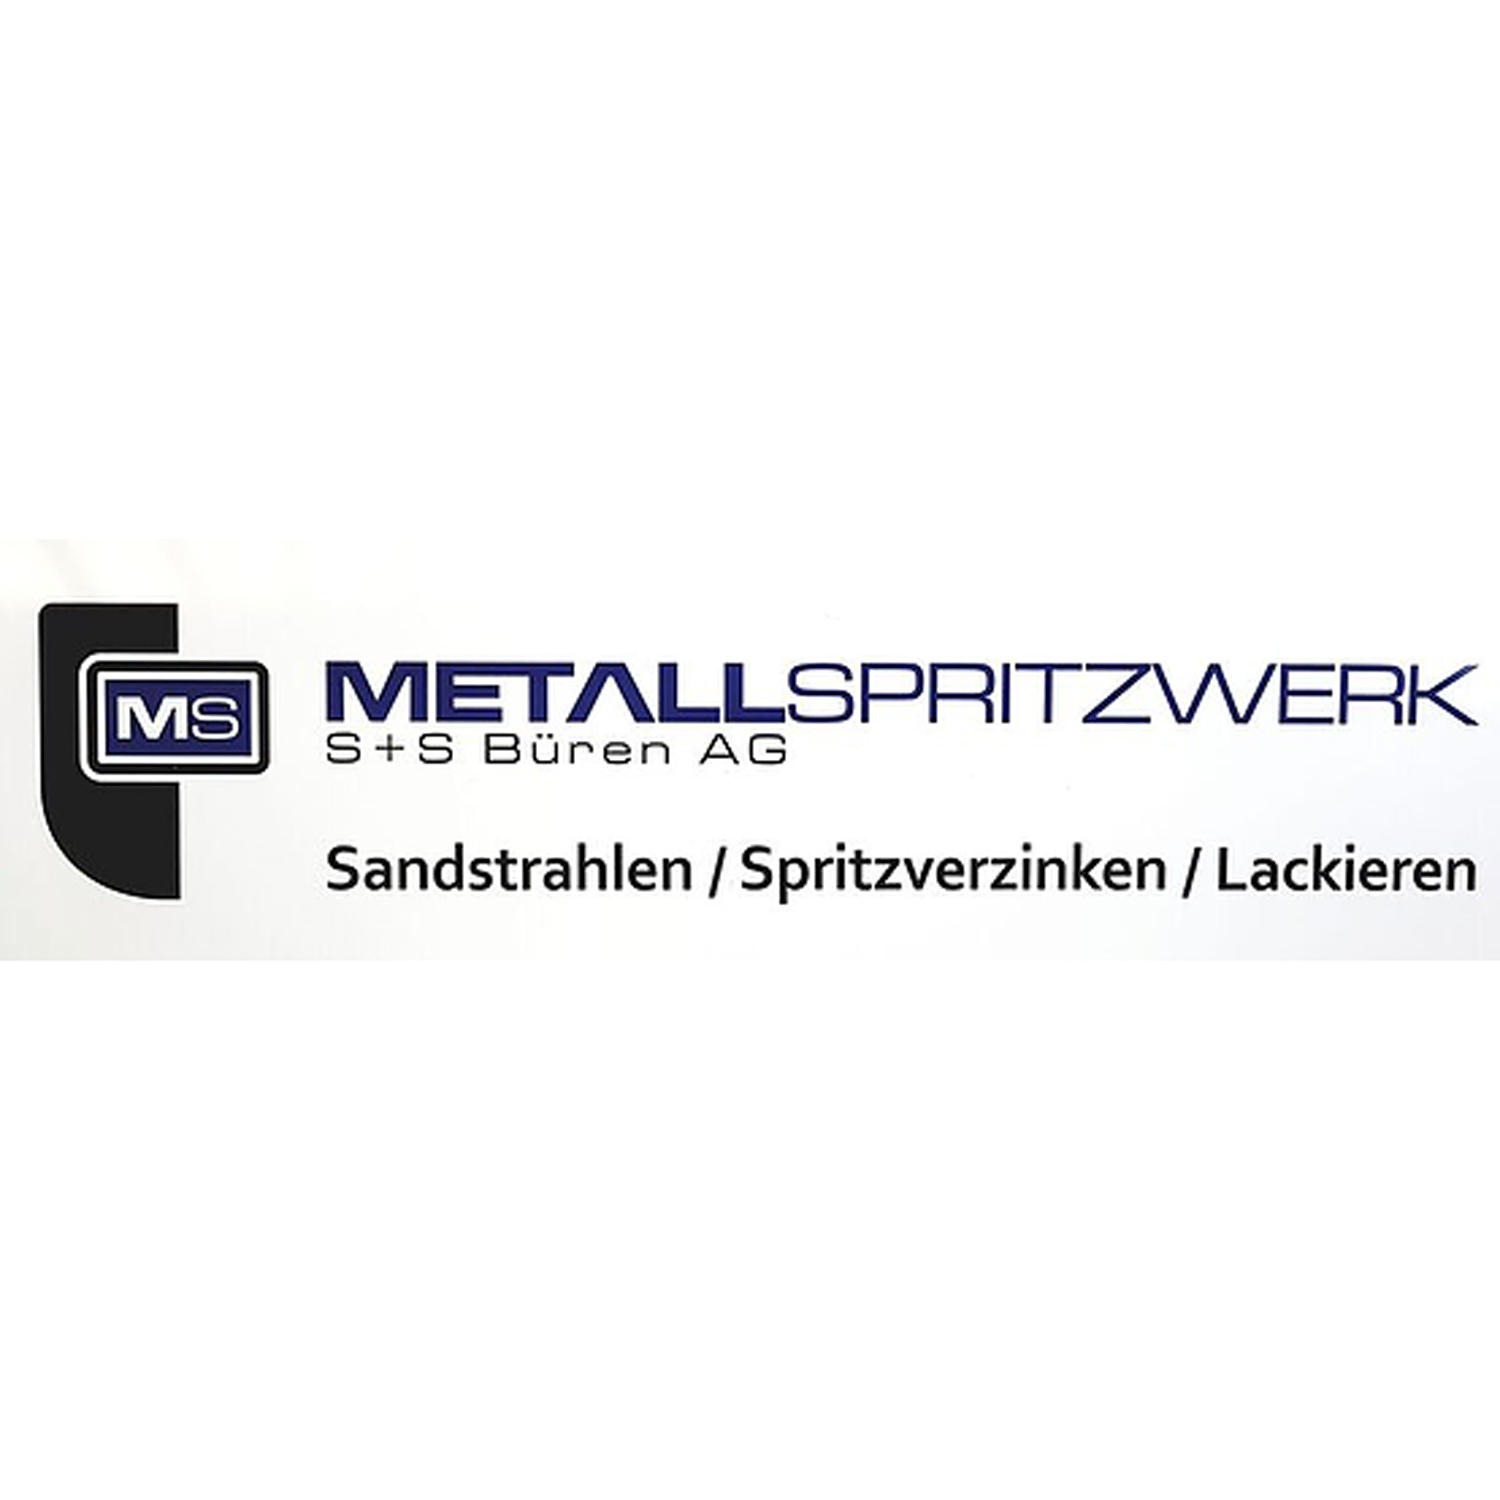 Metallspritzwerk S+S Büren AG Logo